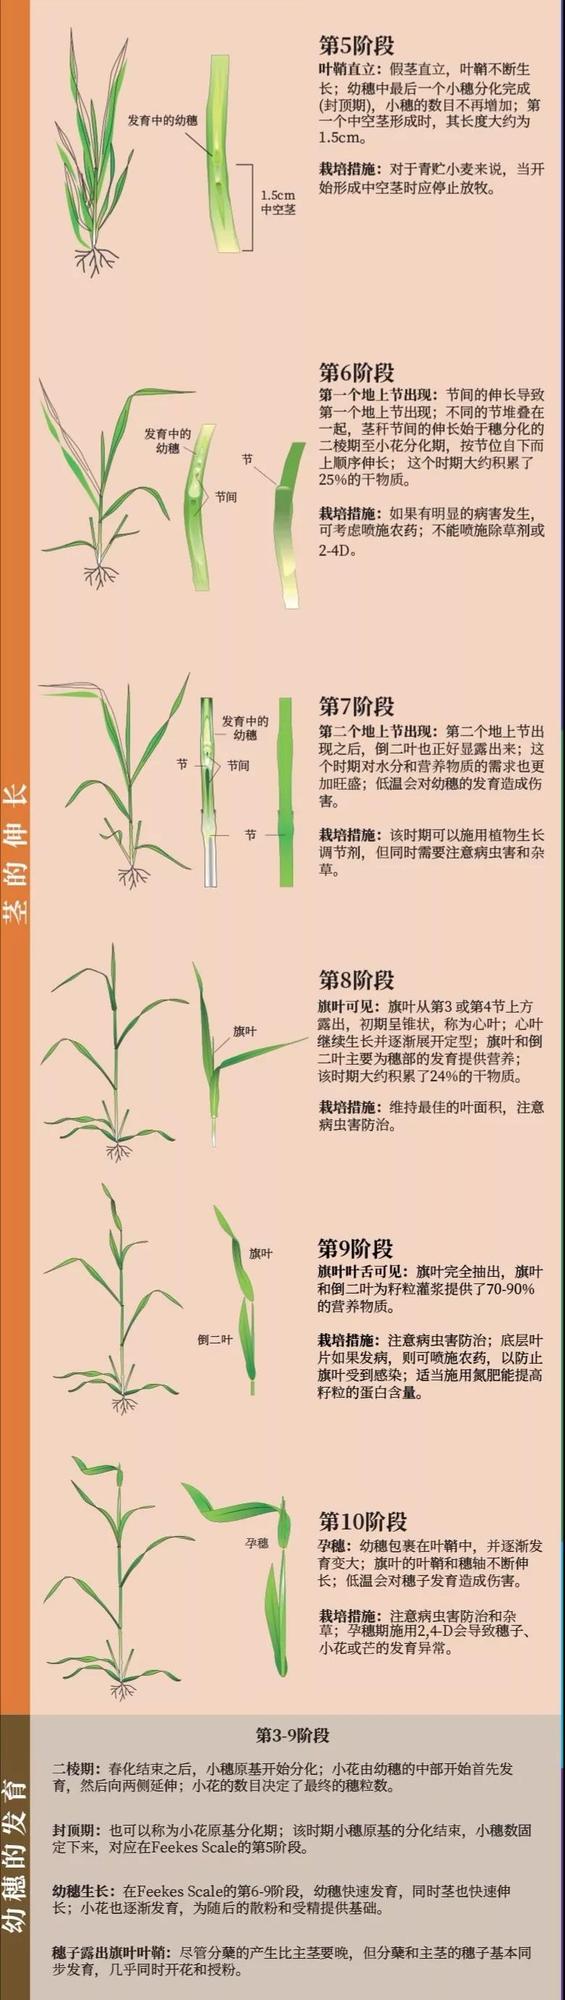 冬小麦生长周期图片